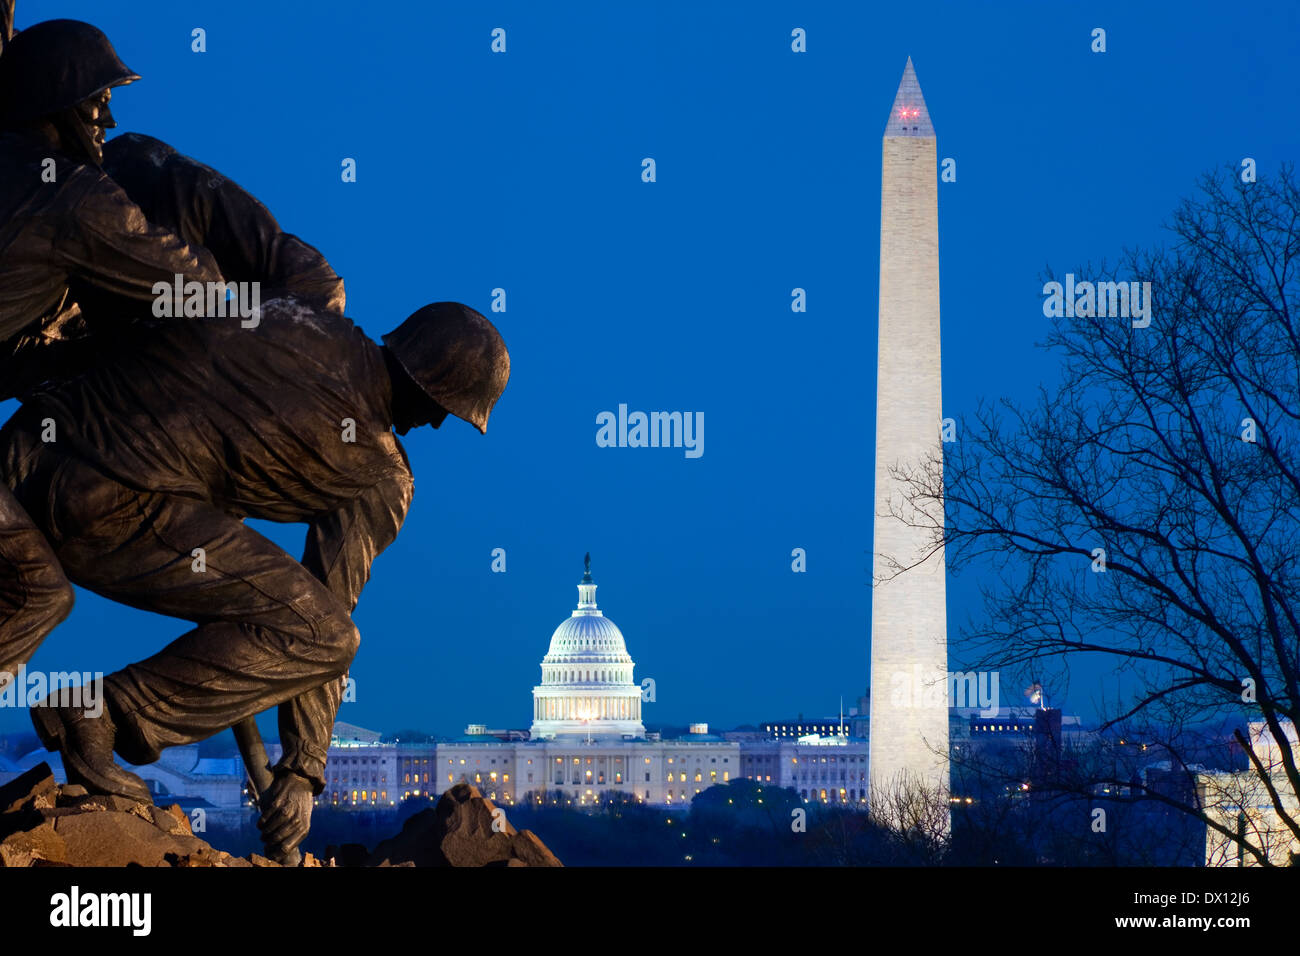 Arlington Marine Corps War Memorial o Iwo Jima Bandera estatua; DC skyline con Lincoln Memorial, el Monumento a Washington, Capitolio de EE.UU Foto de stock